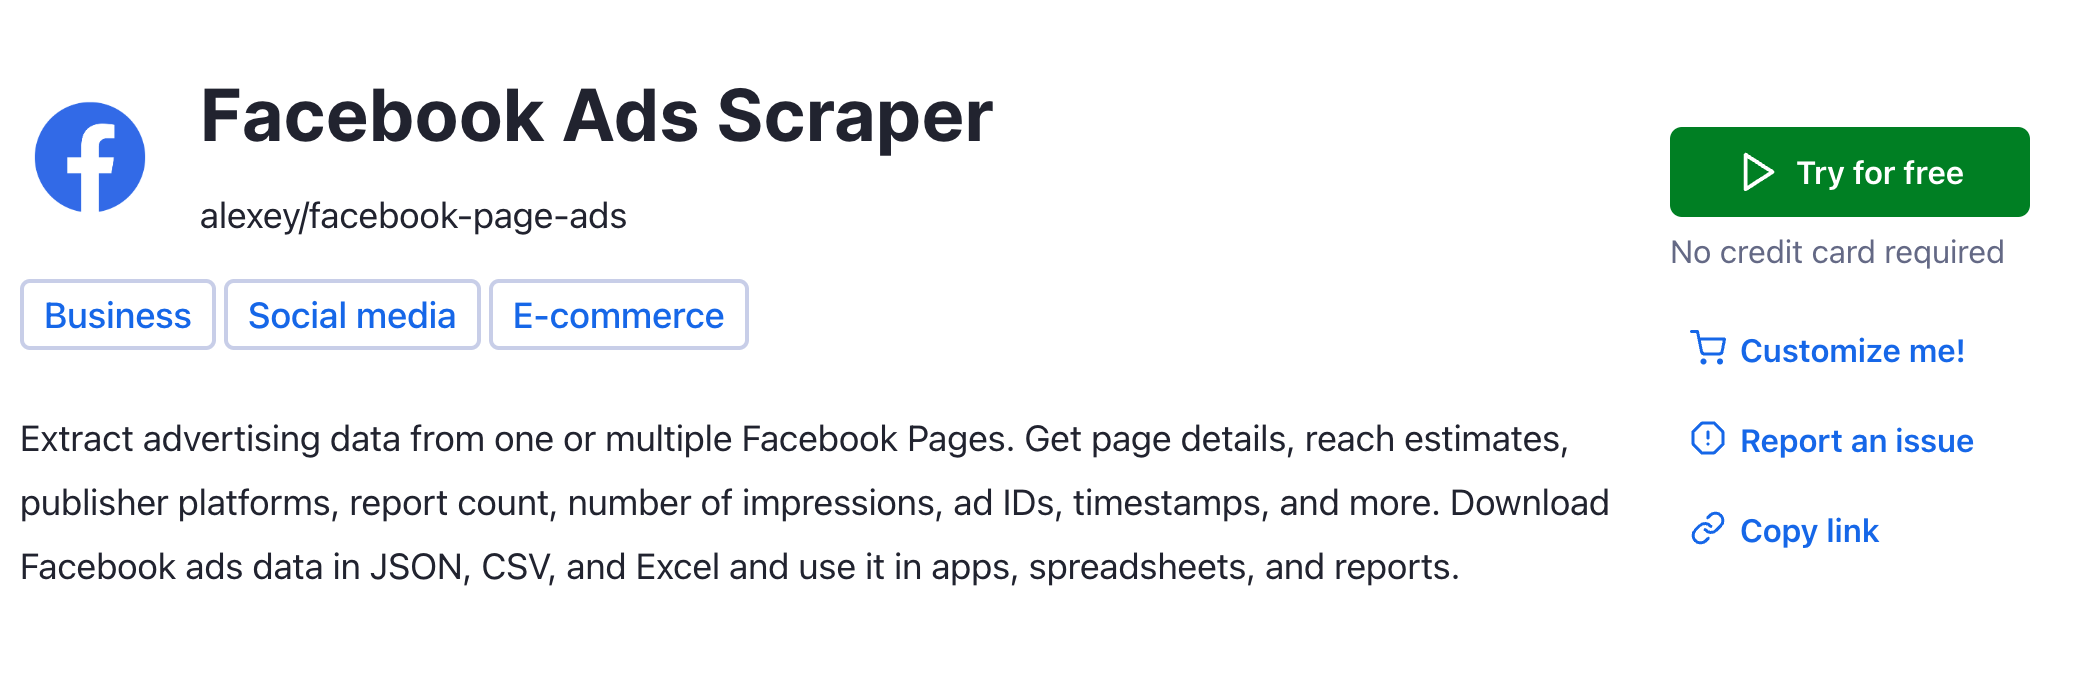 Step 1. Find a scraper for Facebook Ads